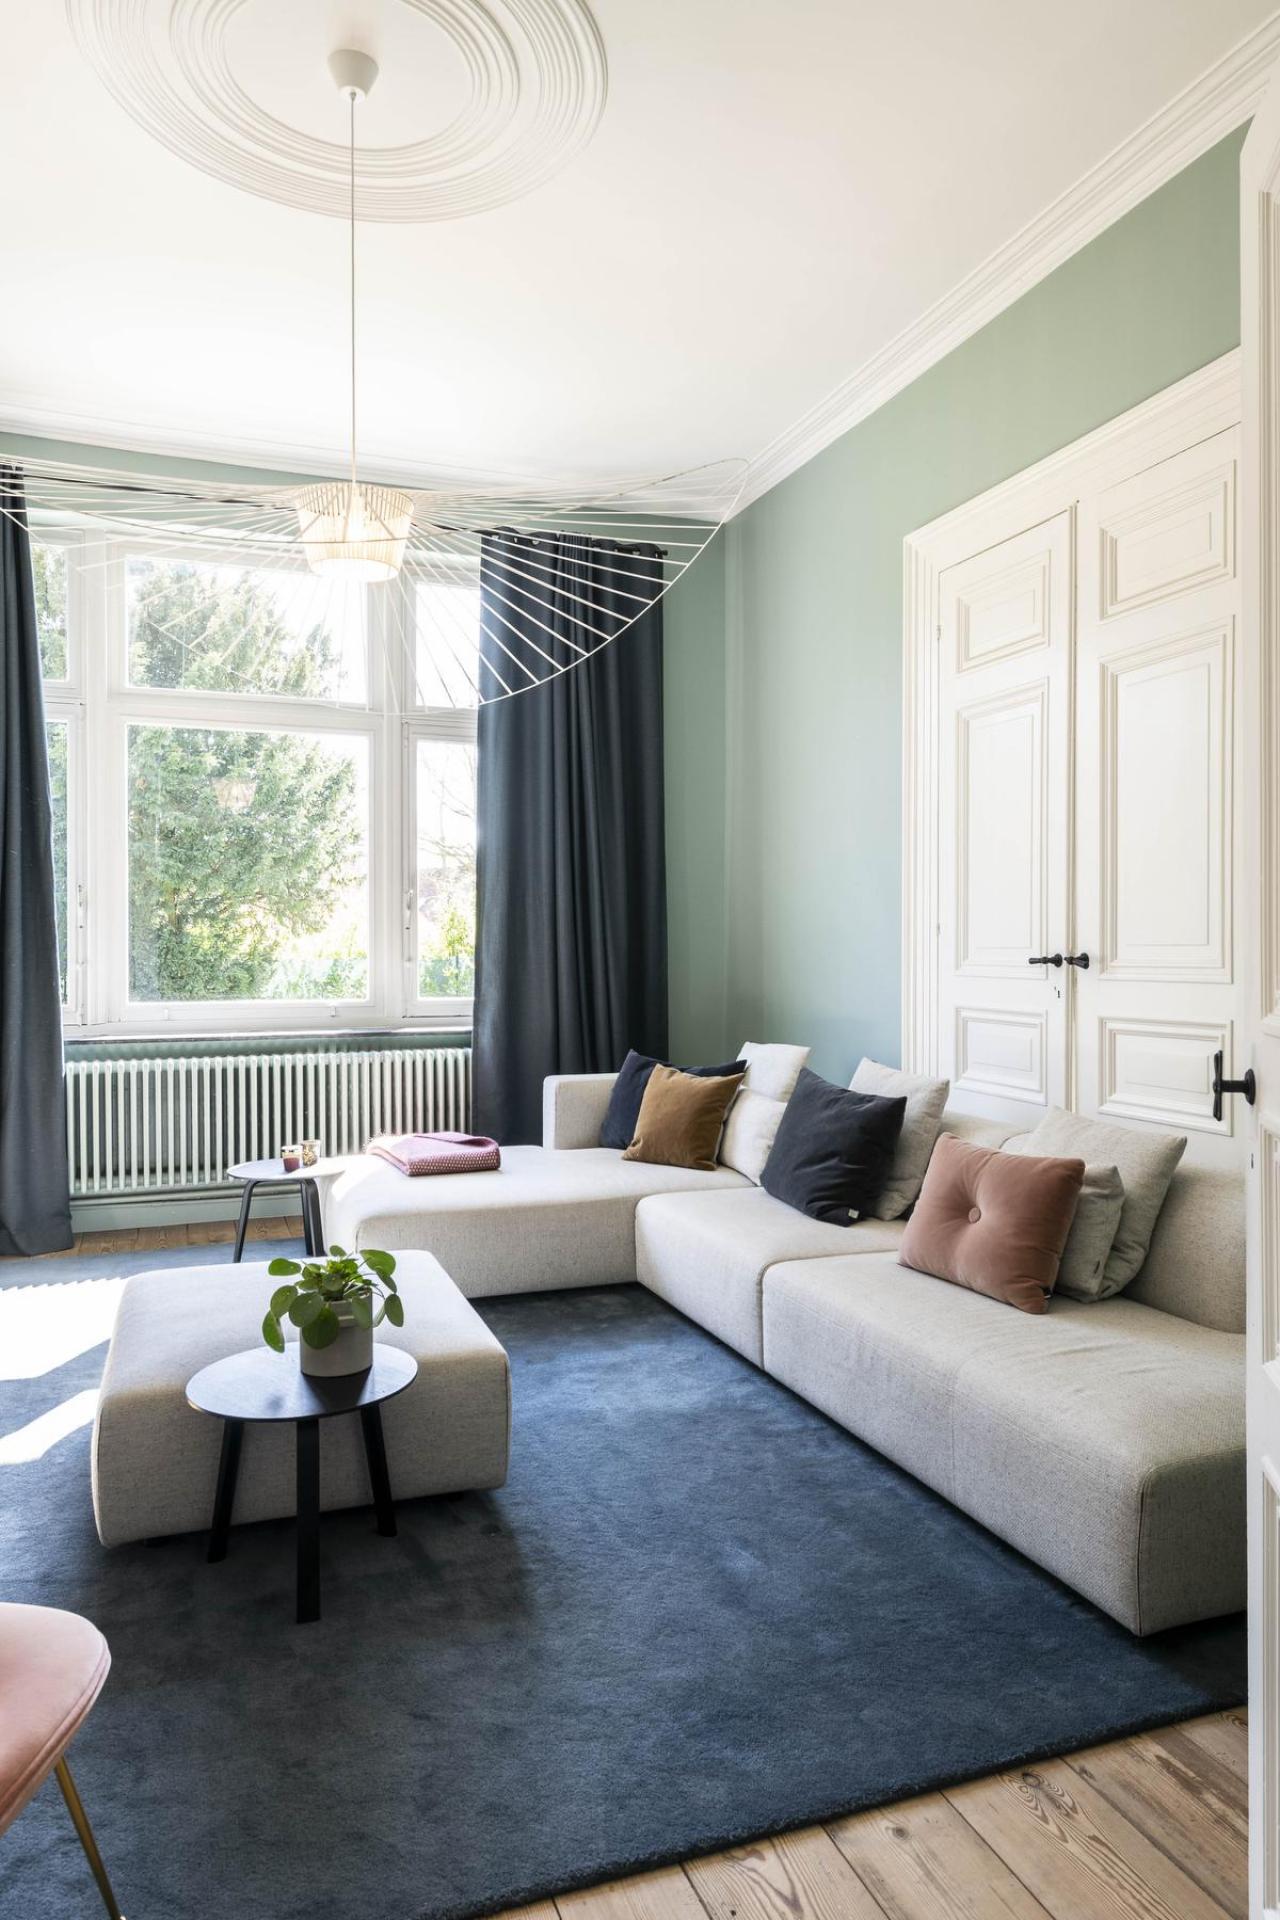 De Vertigo-hanglamp van Petite Friture is een elegante eyecatcher in de woonkamer. Het ontwerp van Constance Guisset wordt gevormd door bijna gewichtloze linten van kunststof en creëert een patroon van zachte schaduwen op de muren en comfortabele zitbank van Prostoria.